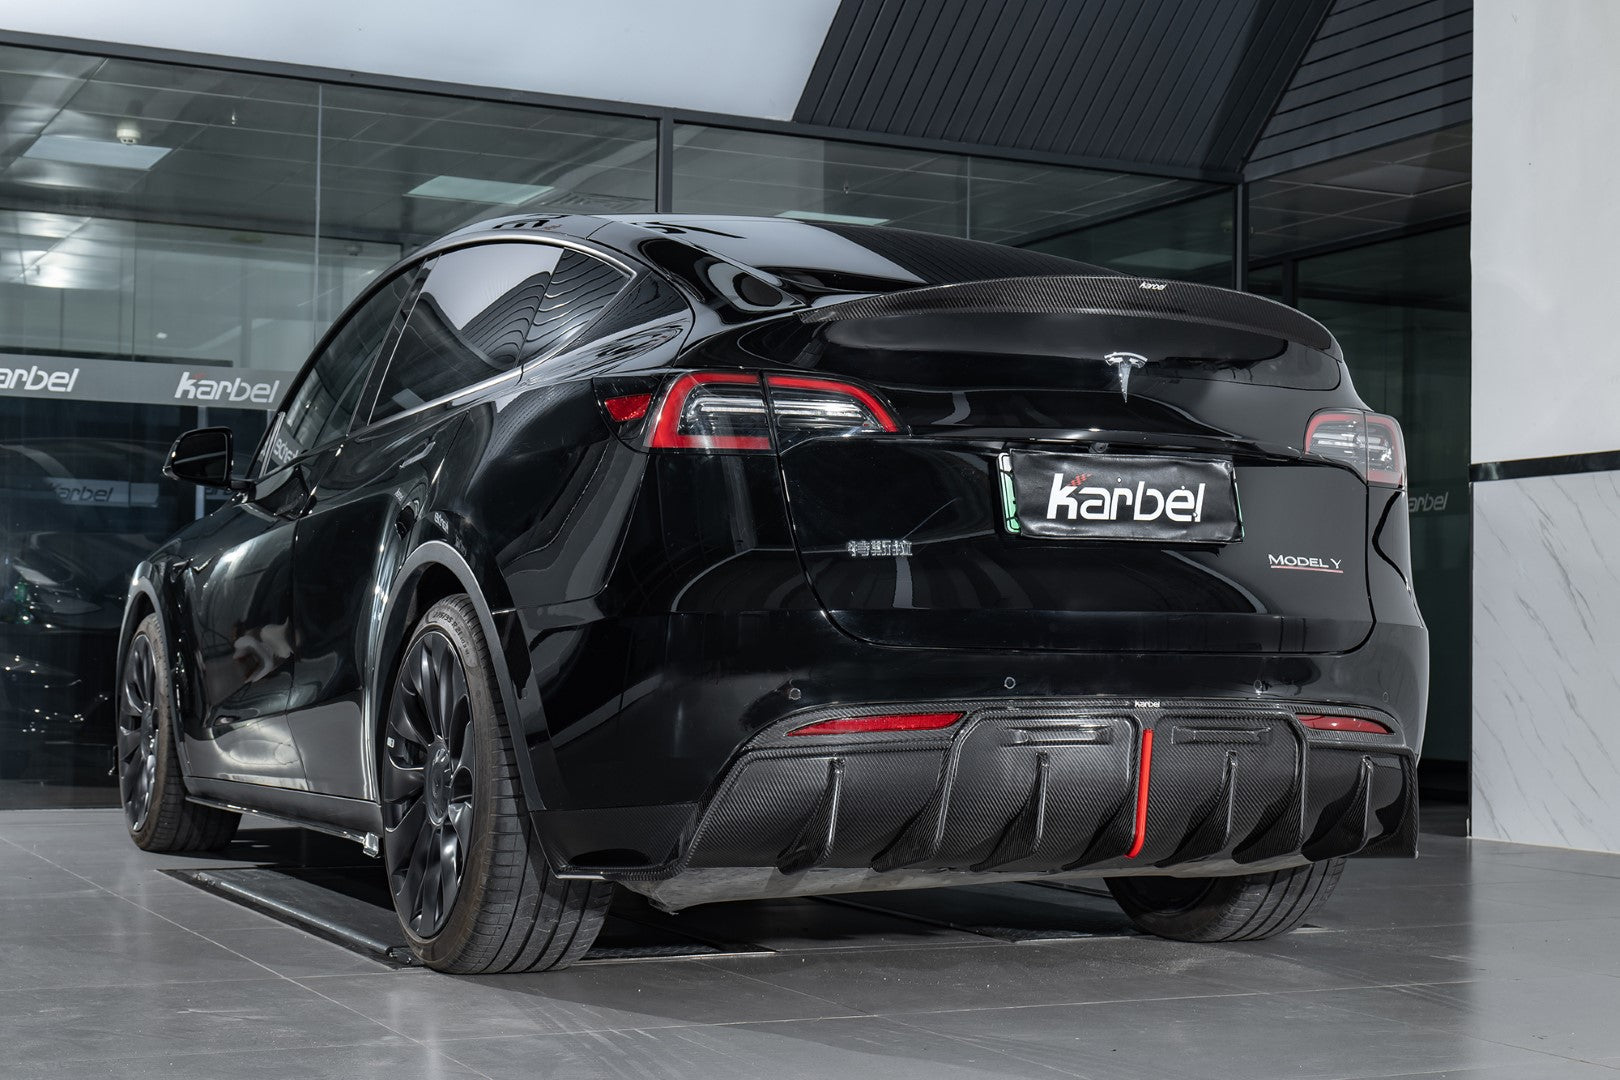 Karbel Carbon Pre-preg Carbon Fiber Rear Diffuser for Tesla Model